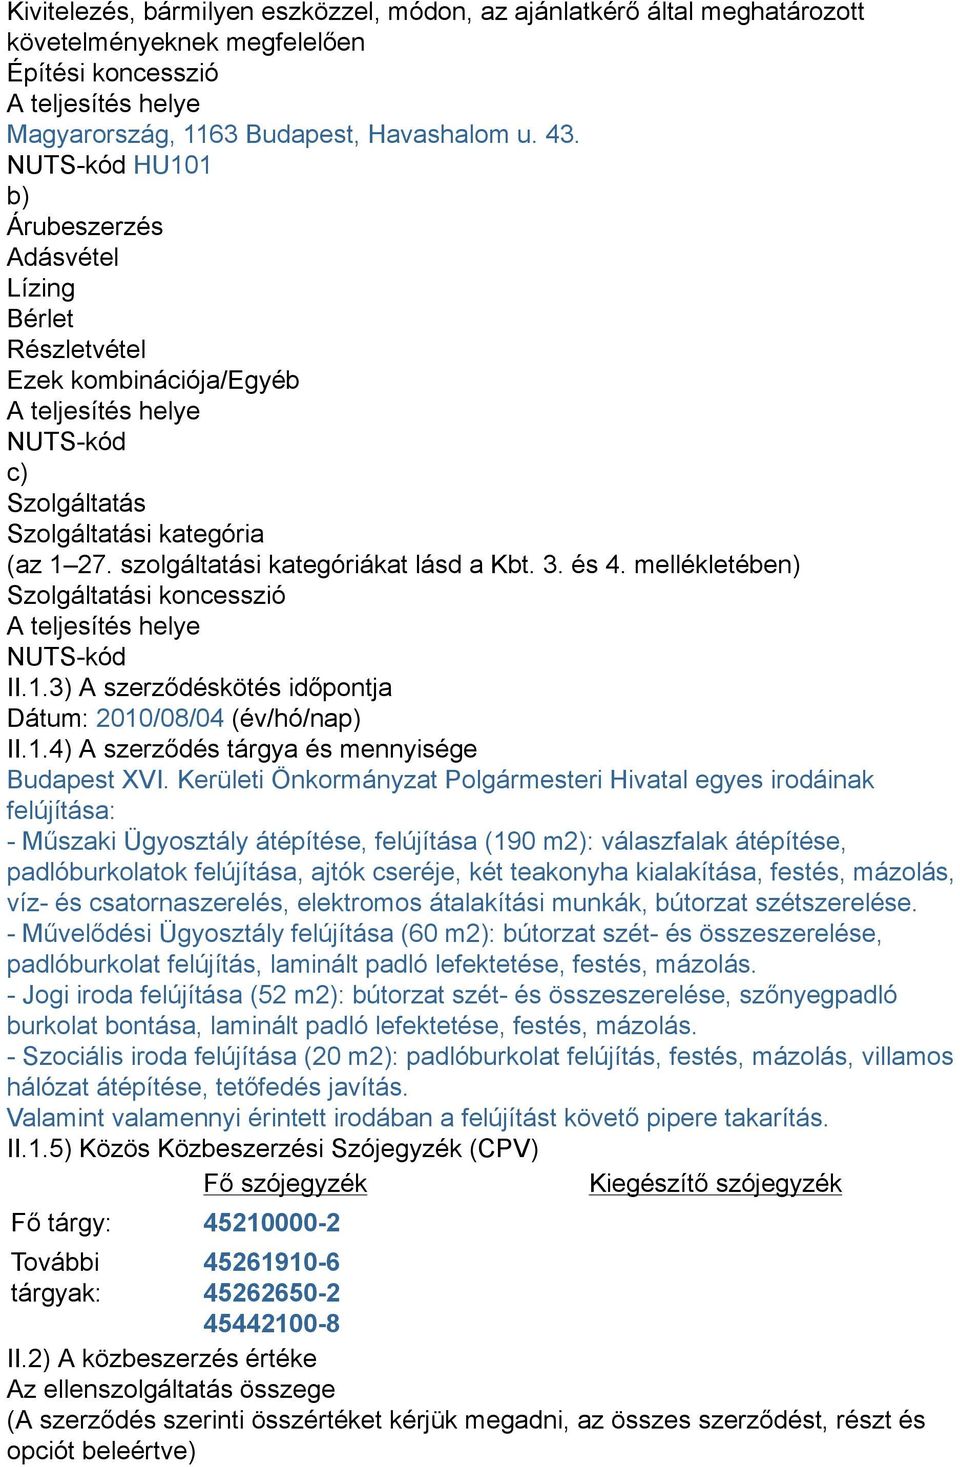 szolgáltatási kategóriákat lásd a Kbt. 3. és 4. mellékletében) Szolgáltatási koncesszió A teljesítés helye NUTS-kód II.1.3) A szerződéskötés időpontja Dátum: 2010/08/04 (év/hó/nap) II.1.4) A szerződés tárgya és mennyisége Budapest XVI.